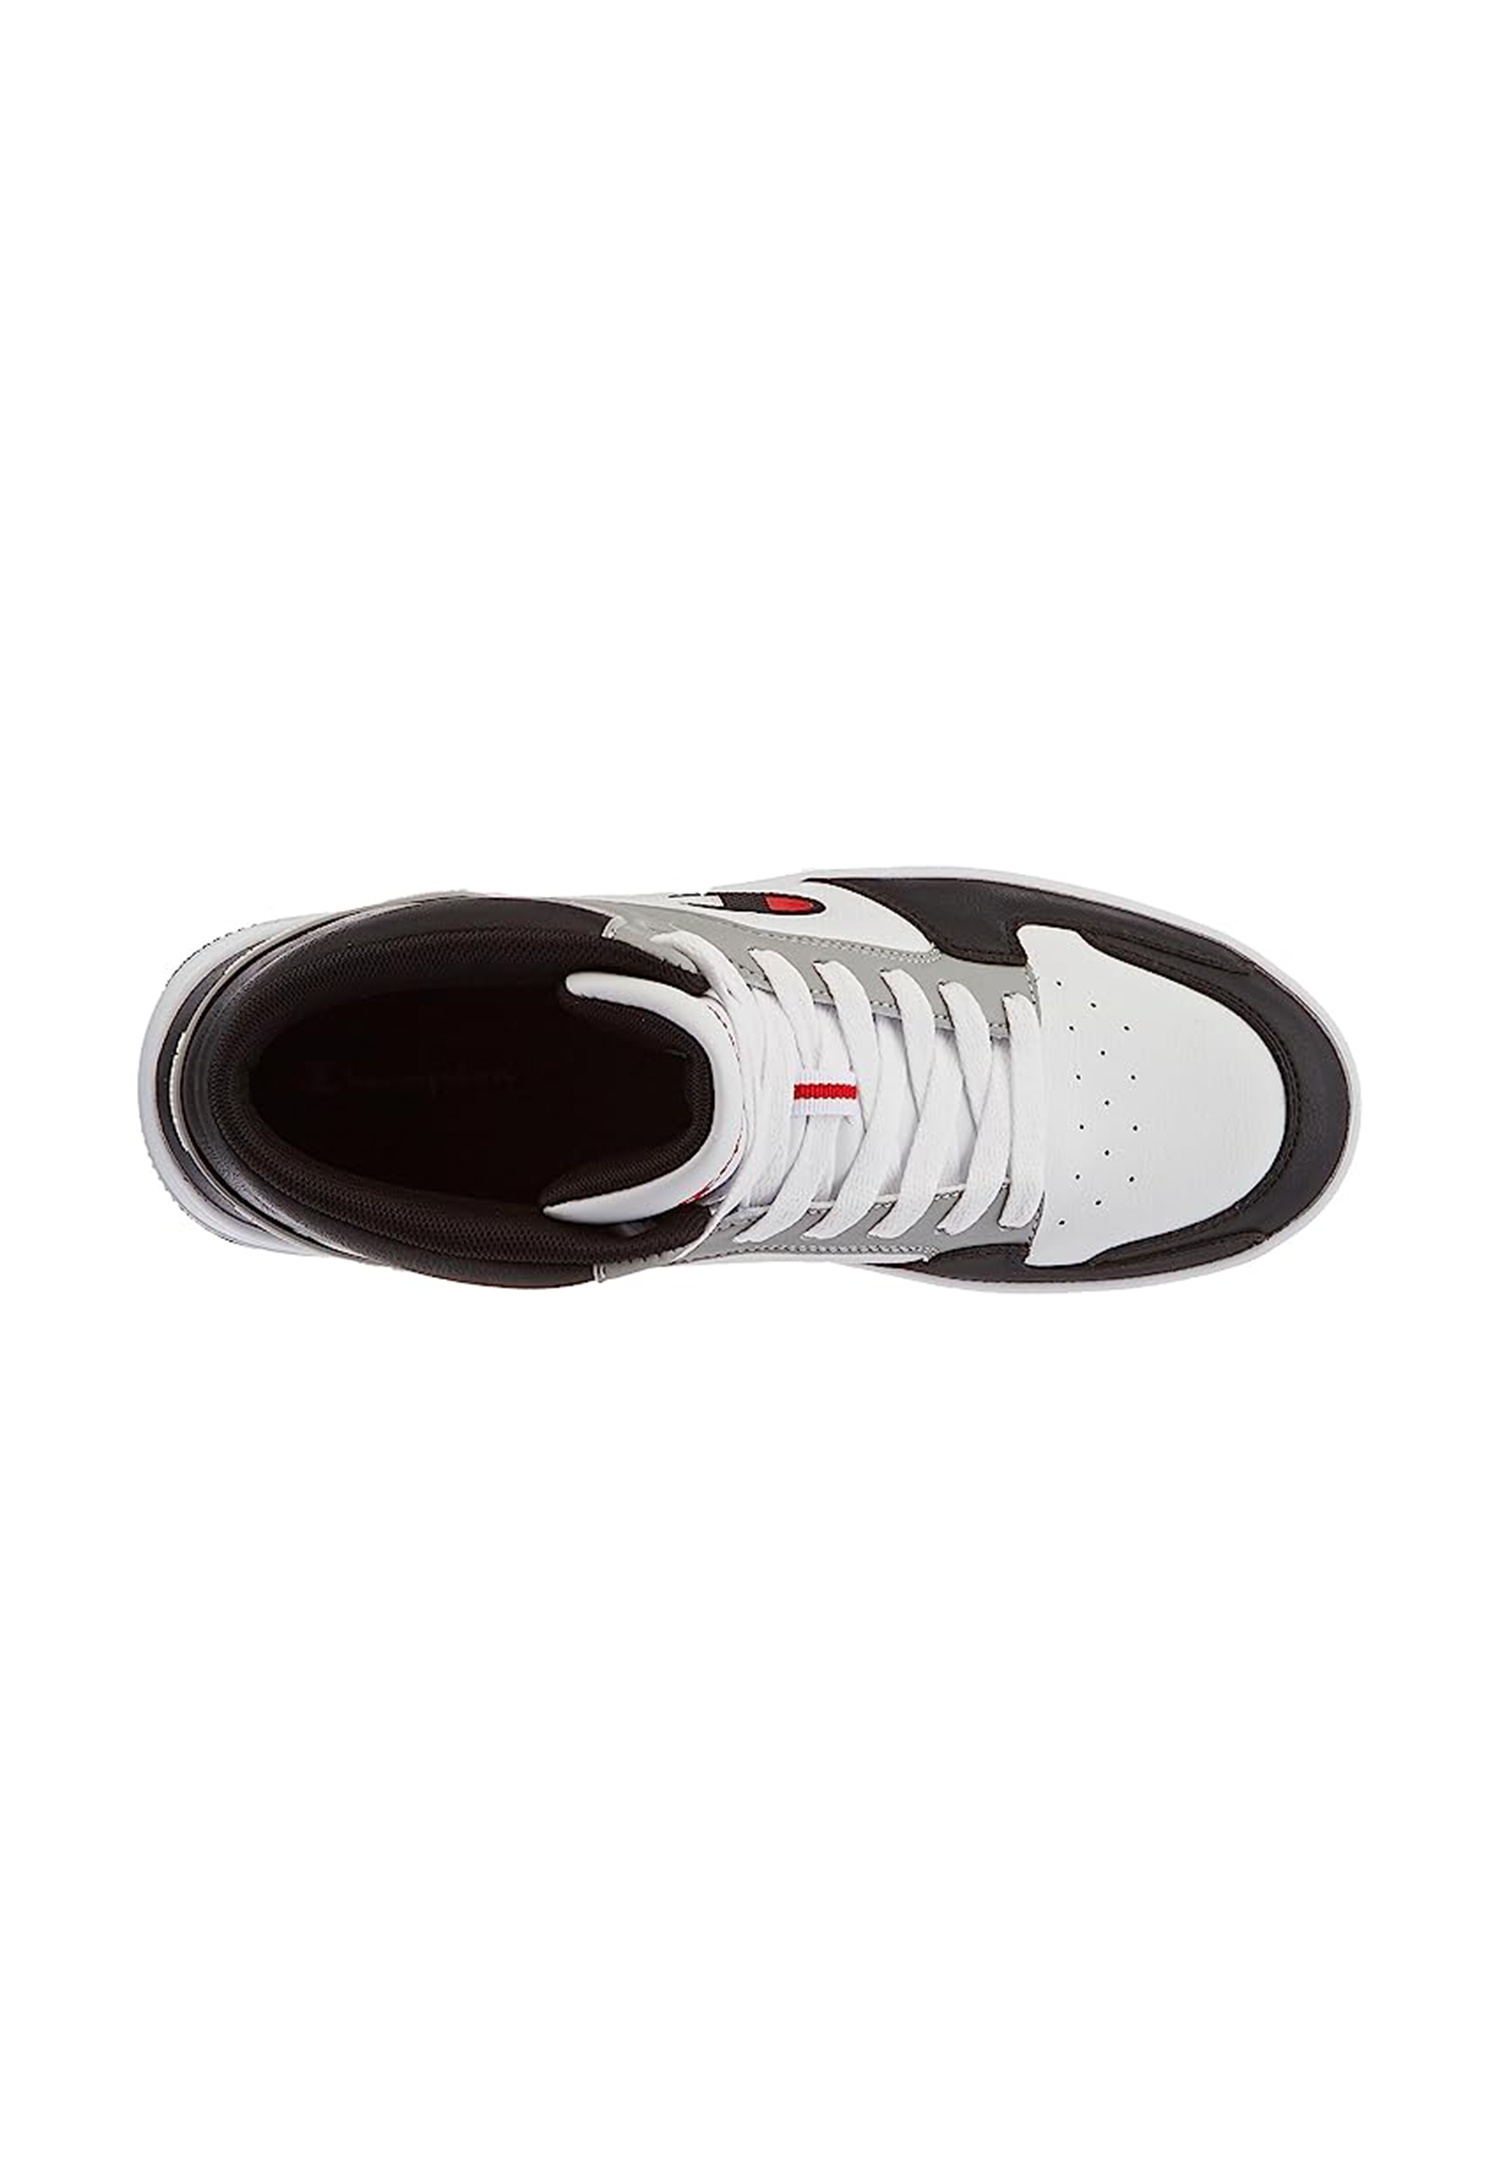 Champion REBOUND 2.0 MID Herren Sneaker S21907-CHA-WW014  weiß/schwarz/grau